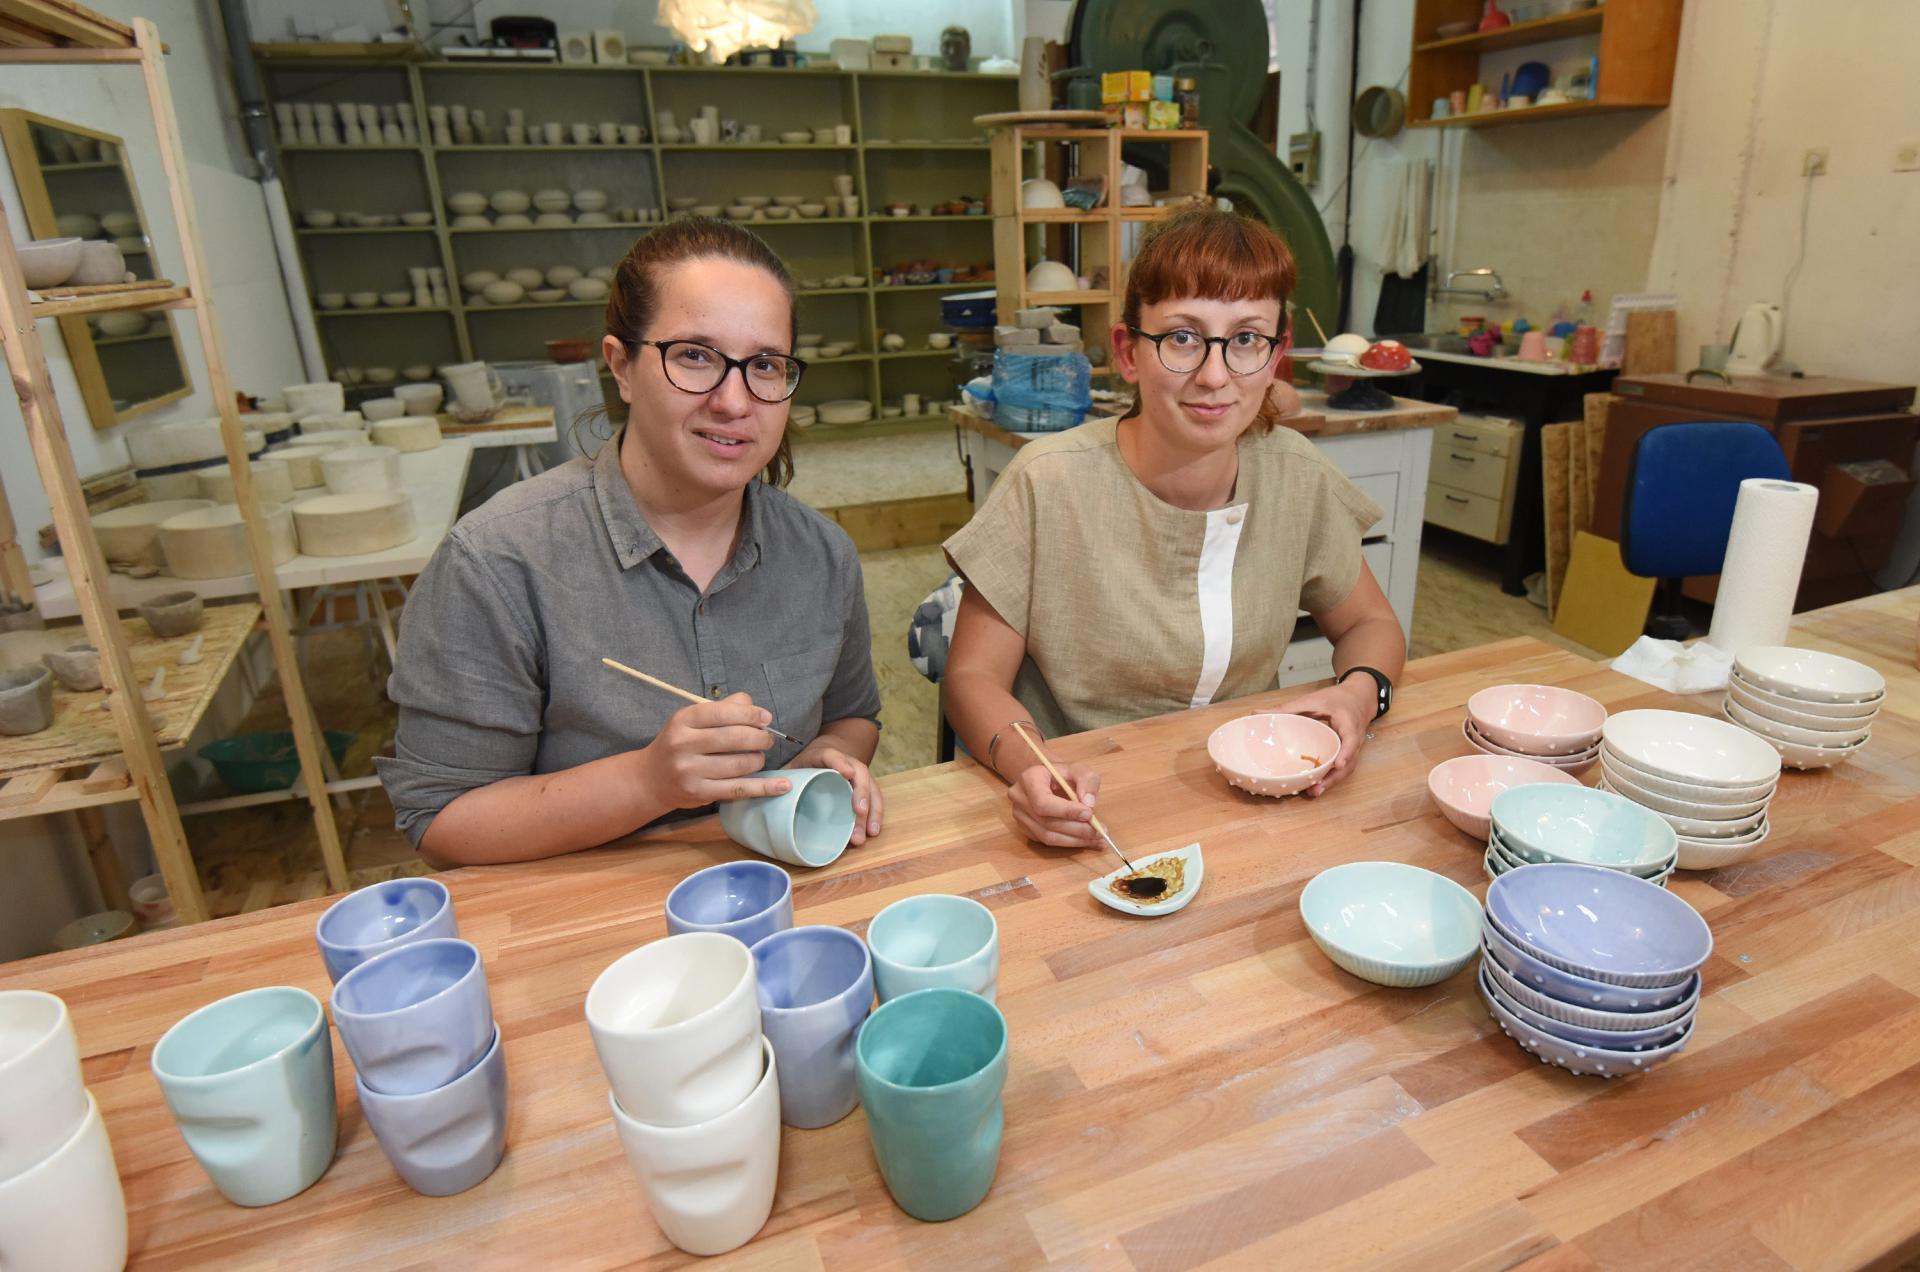 Djevojke su u poslu izrade keramike podjeljene, Zdenka više izrađuje na ločarskom kolu, dok se Martina opredijelila za ručno modeliranje i oslikavanje.